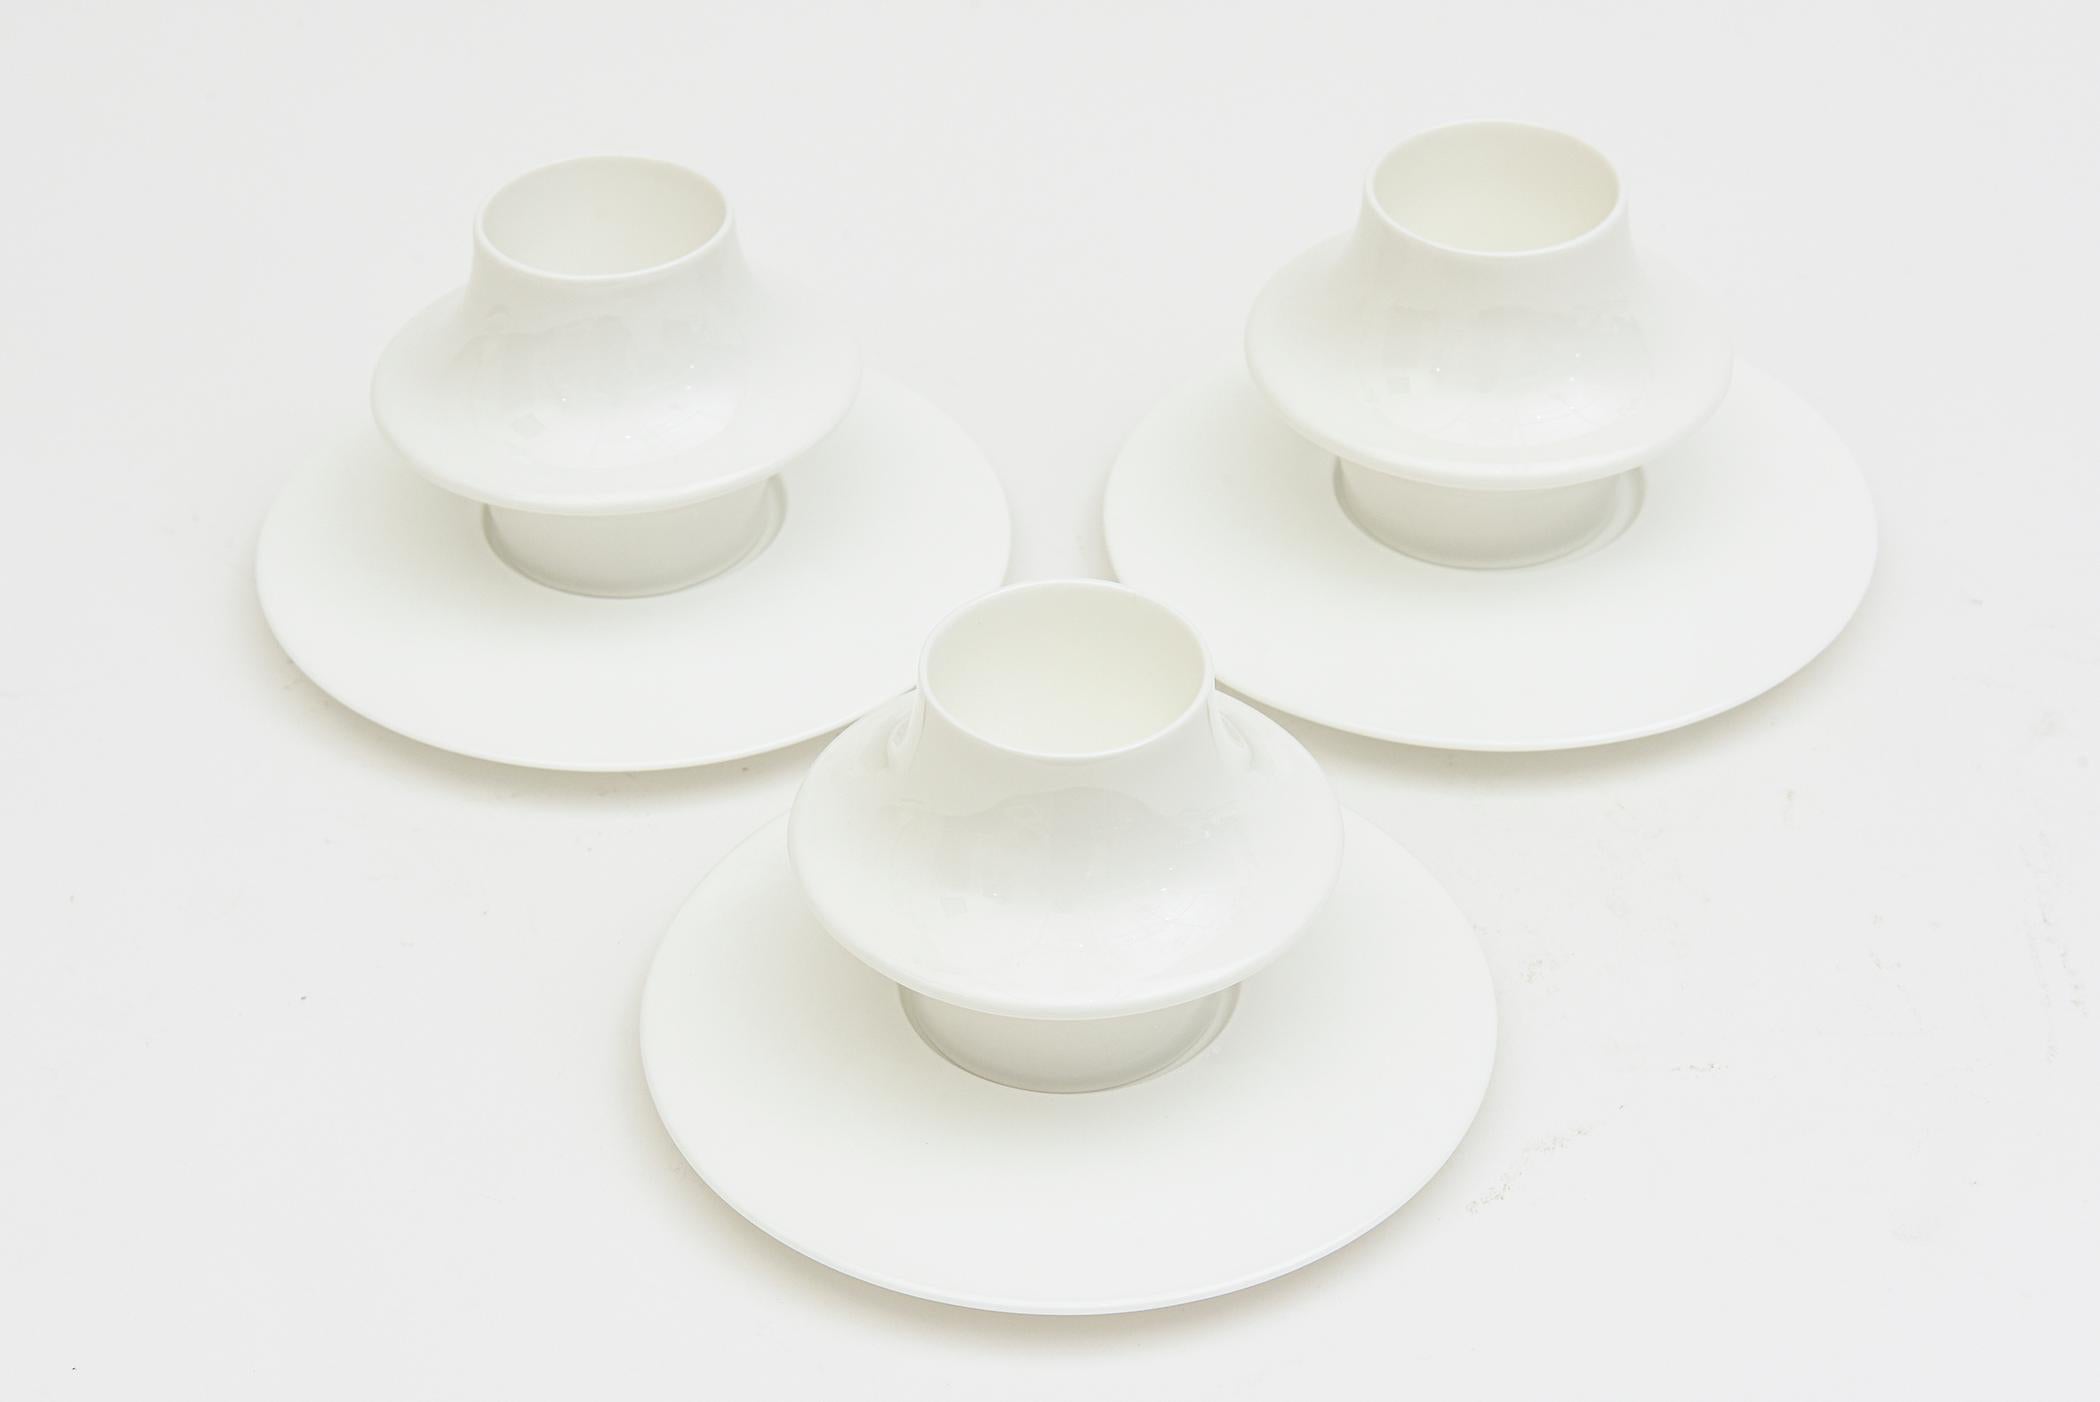 Ce fabuleux ensemble moderniste de 7 tasses à demitasse et soucoupes en porcelaine blanche d'Alessi a été conçu par Tom Kovacs et faisait partie du projet Tea and Flowers antérieur. Il s'agit du motif Supa Mocha. Le coffret a été produit en quelques